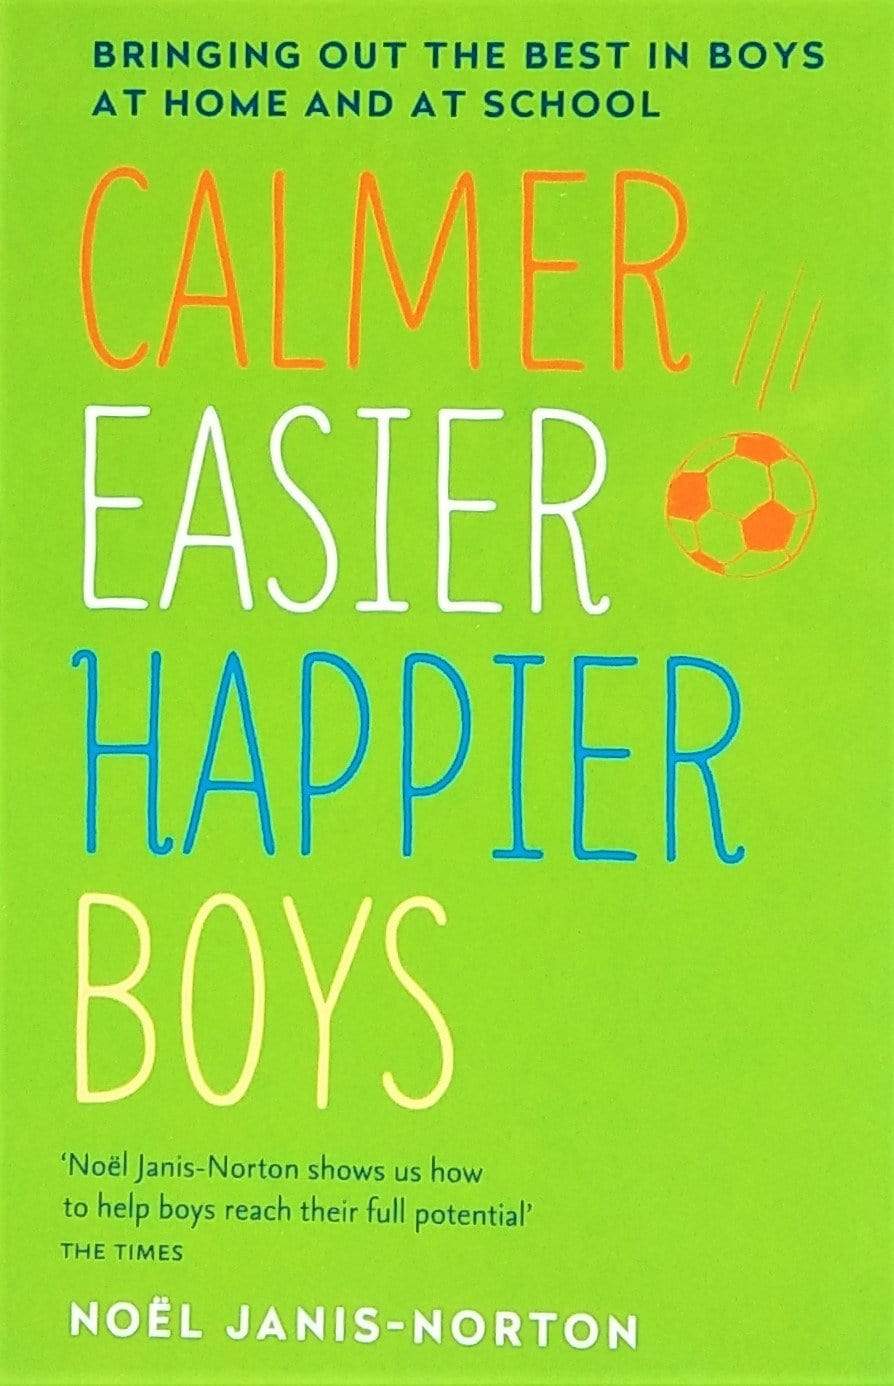 Calmer Easter Happier Boys